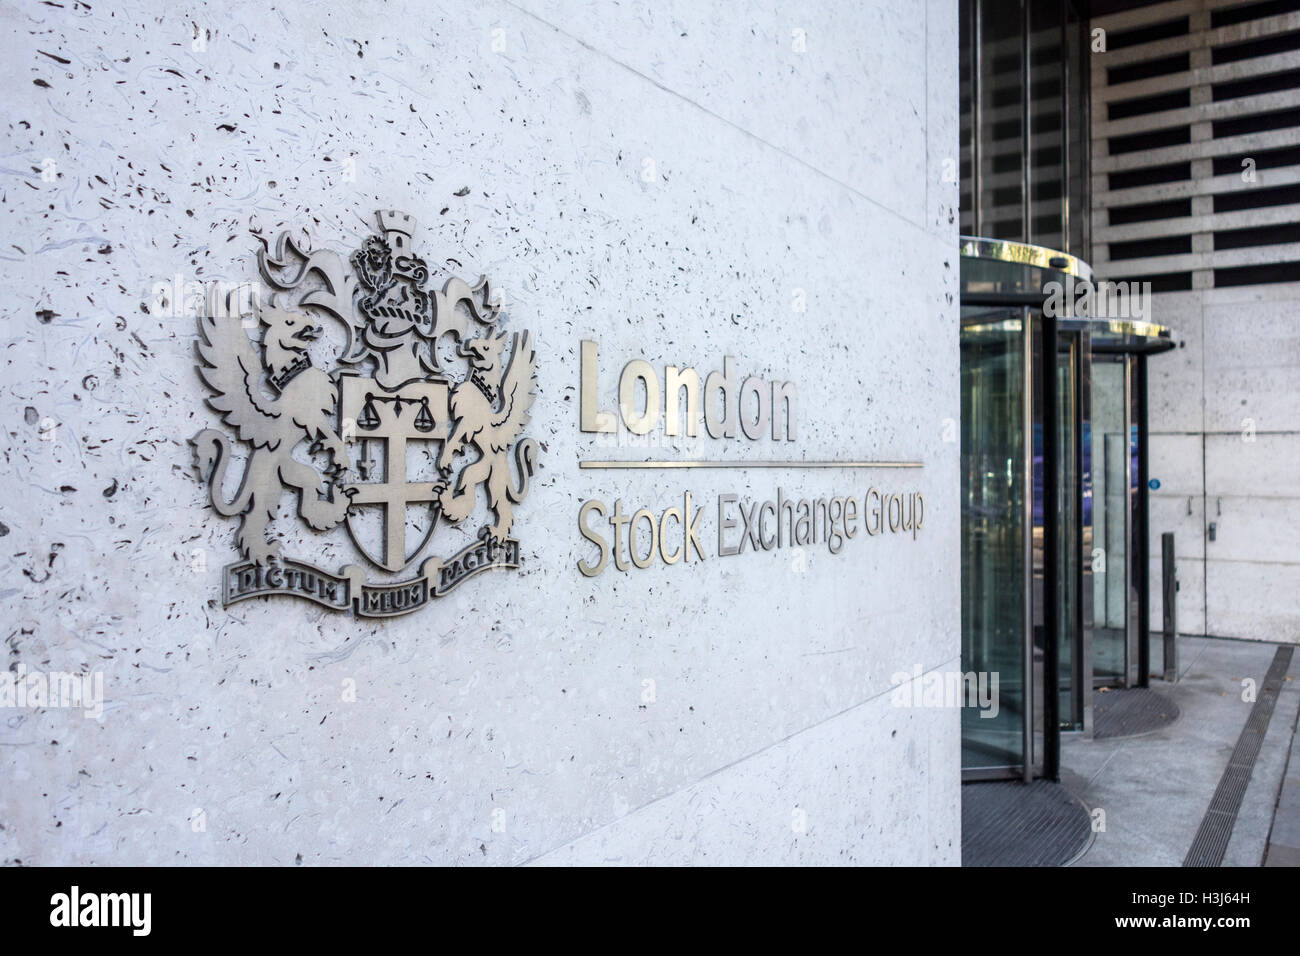 London Stock Exchange (LSE capacités sign.Ville de London, UK Banque D'Images